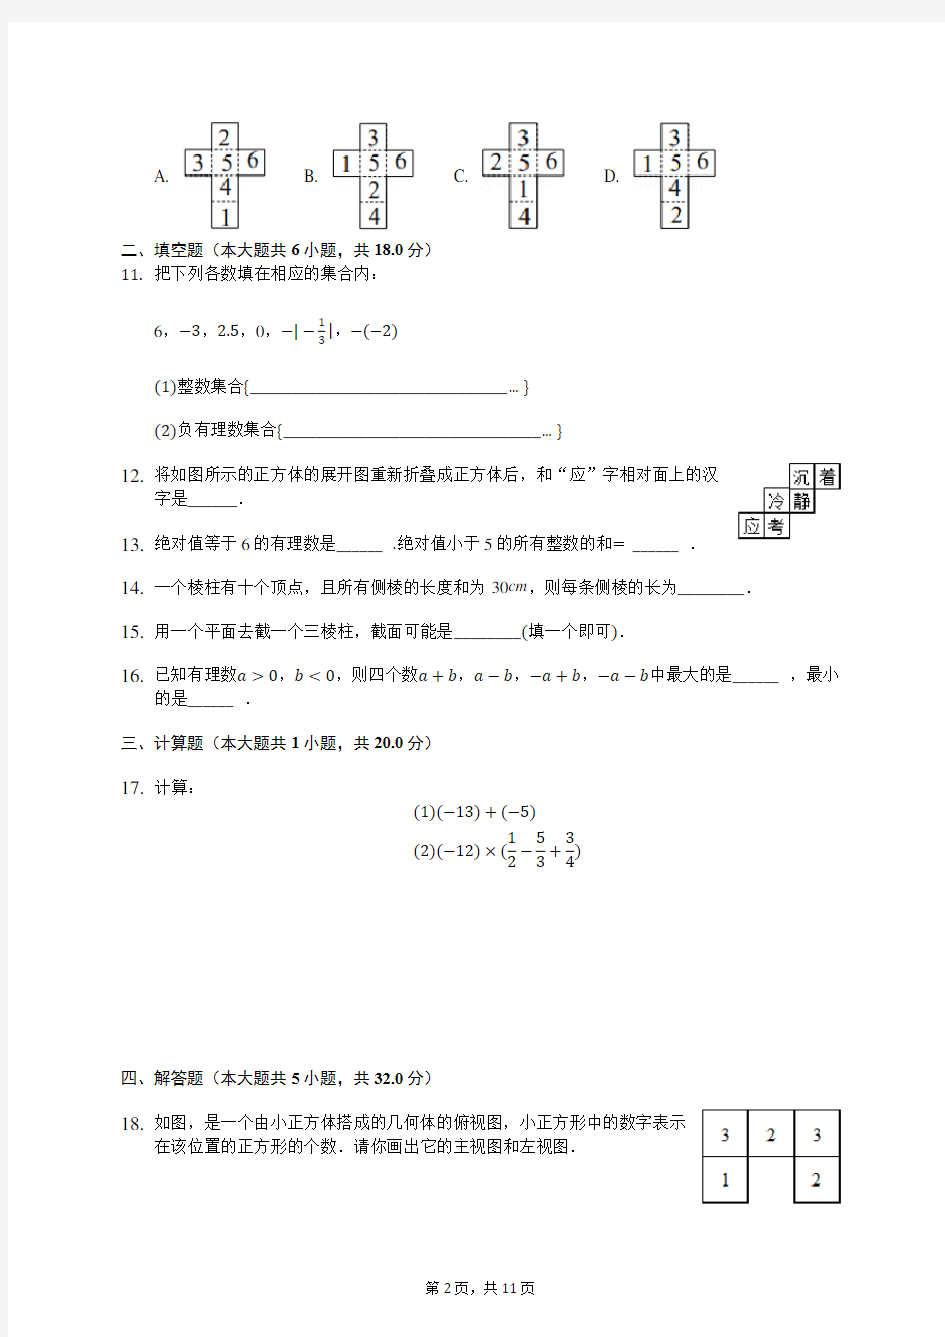 2019-2020学年陕西师大附中七年级(上)第一次月考数学试卷 (含答案解析)